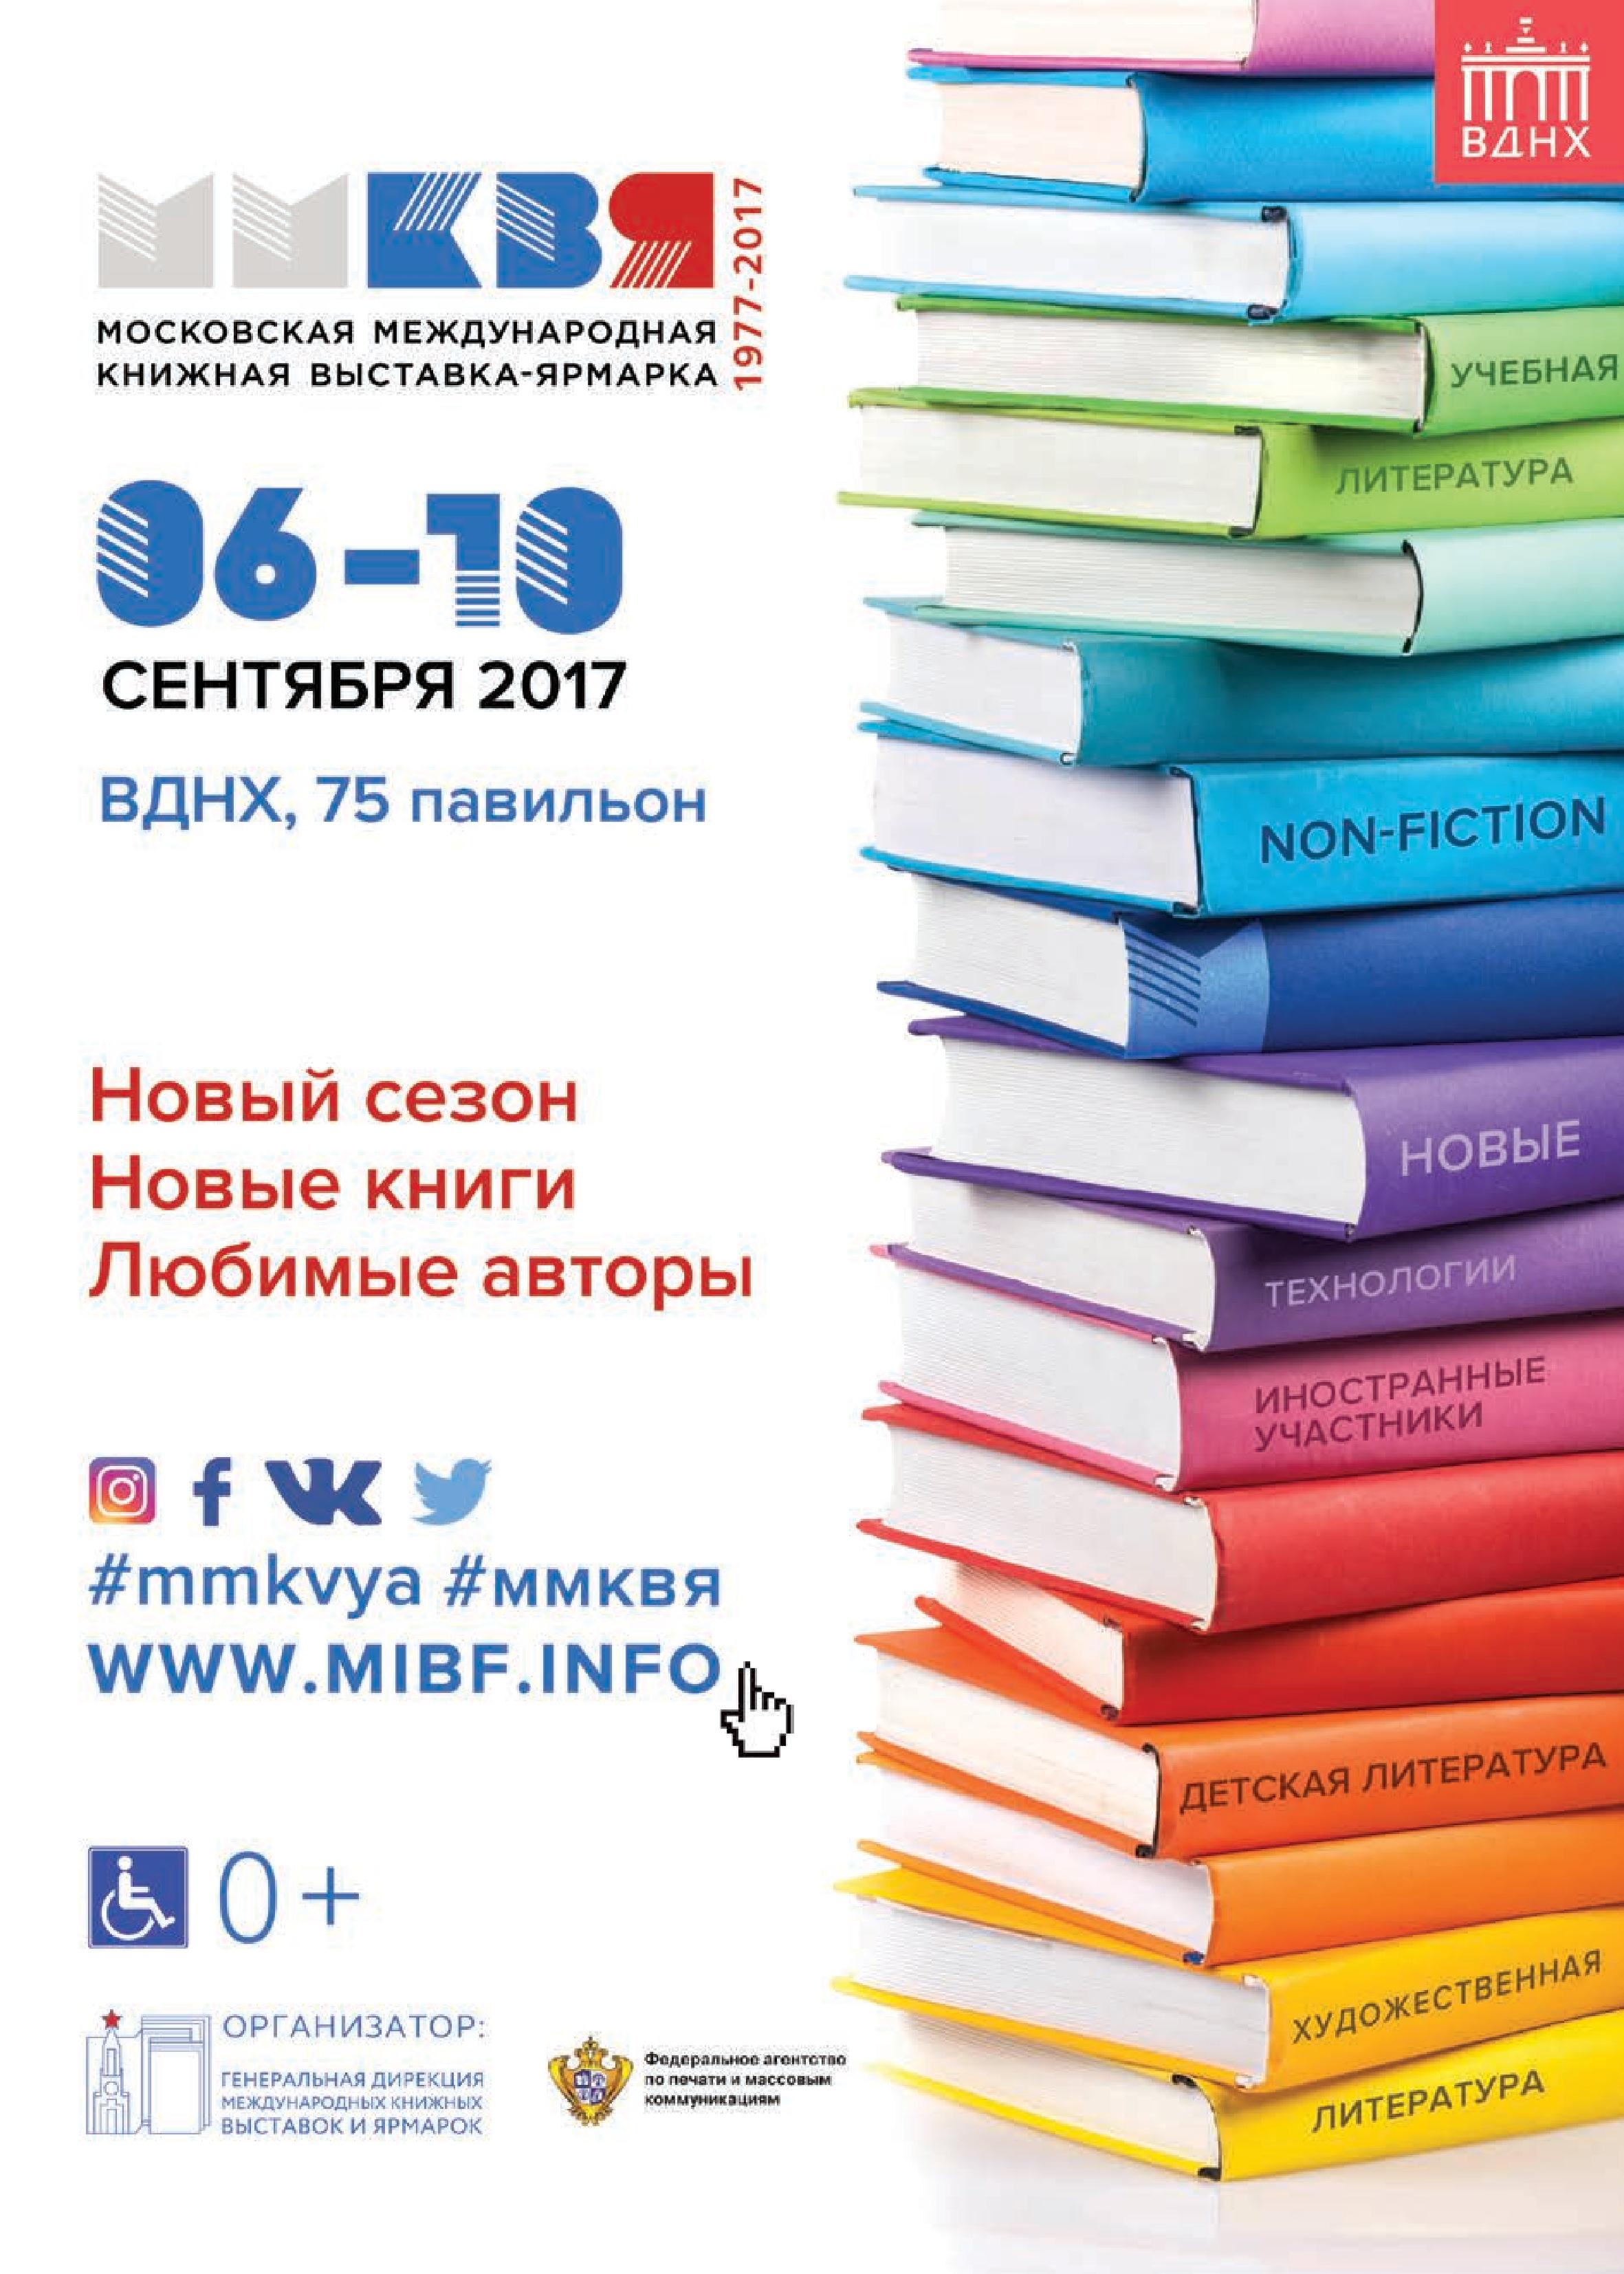 Московская международная книжная выставка-ярмарка (ММКВЯ) 2017